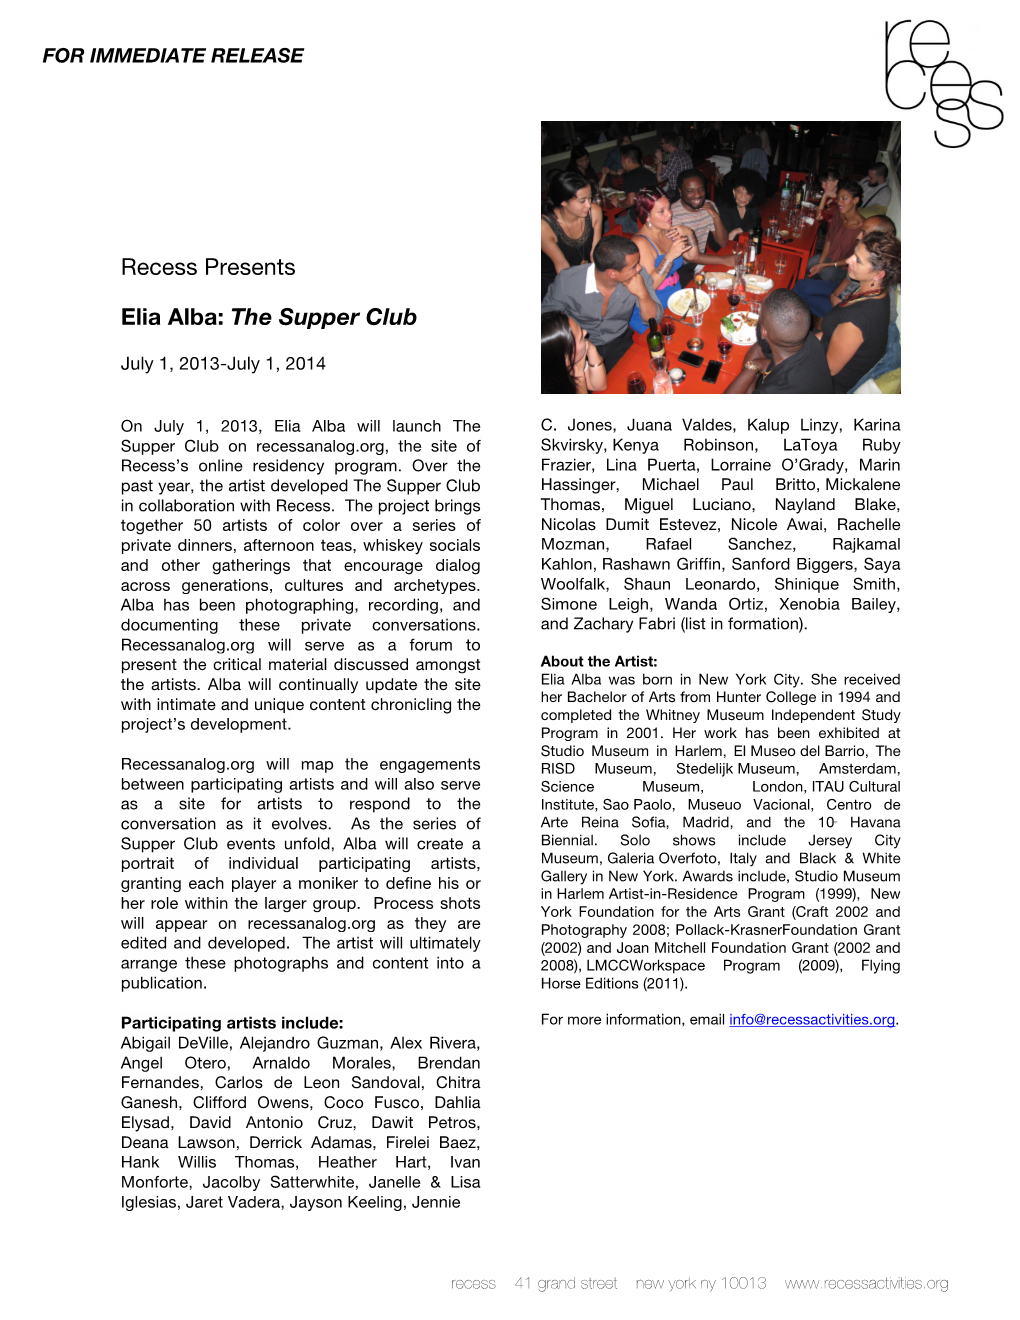 Recess Presents Elia Alba: the Supper Club